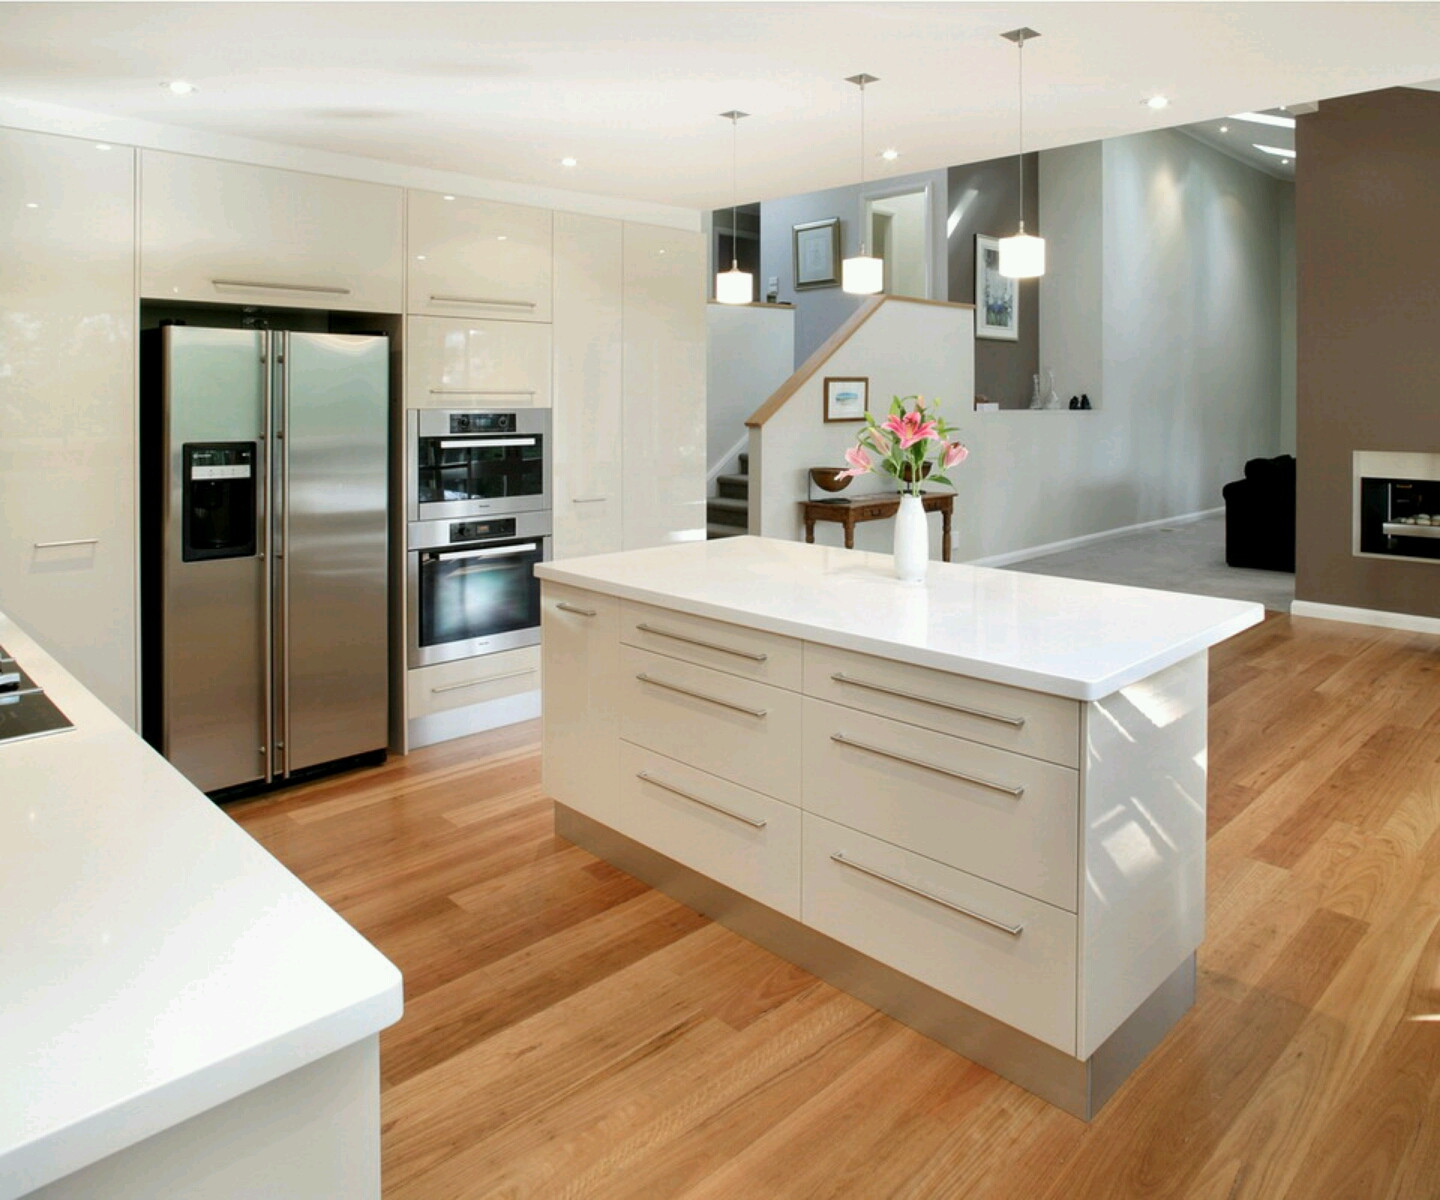 Modern Kitchen Cabinet Design Photos
 Luxury kitchen modern kitchen cabinets designs